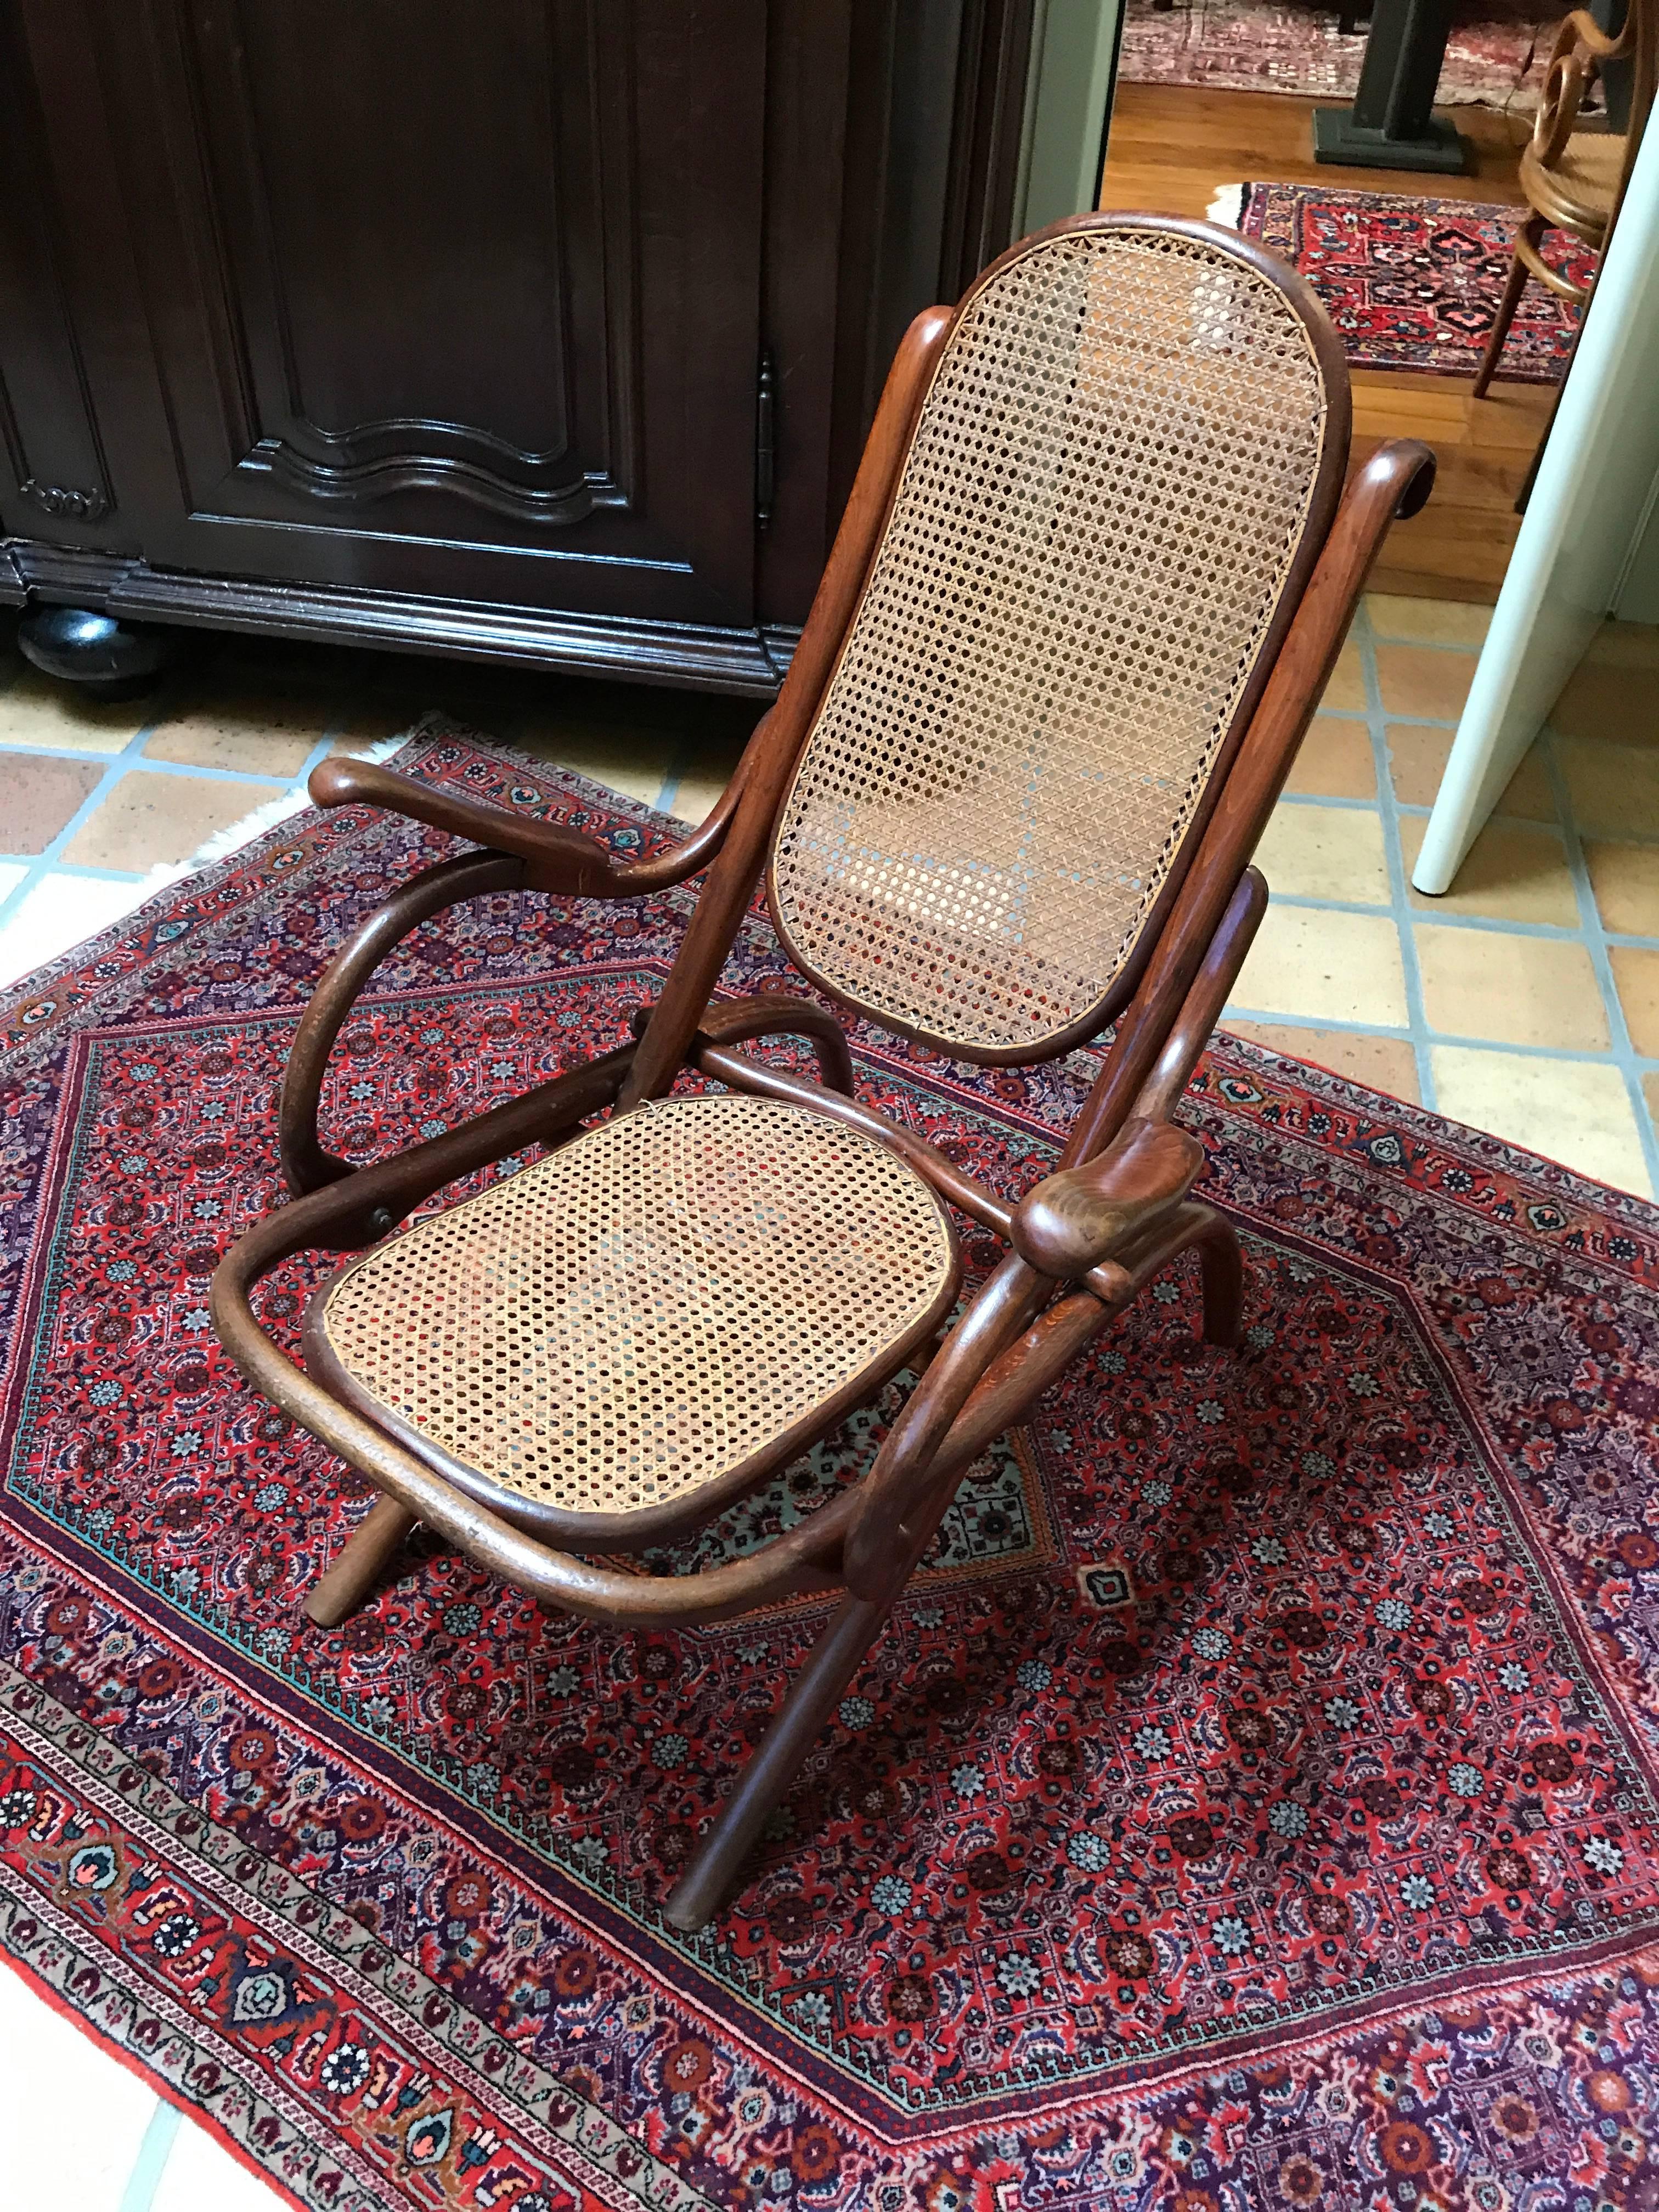 Älteste Form eines Sessels
Klappstuhl von Thonet Nr. 1 
Seltene älteste Form und erster Stempel von Thonet, 1867
Kaminsessel
Maße: 75 x 64 x 98 x 42.
 